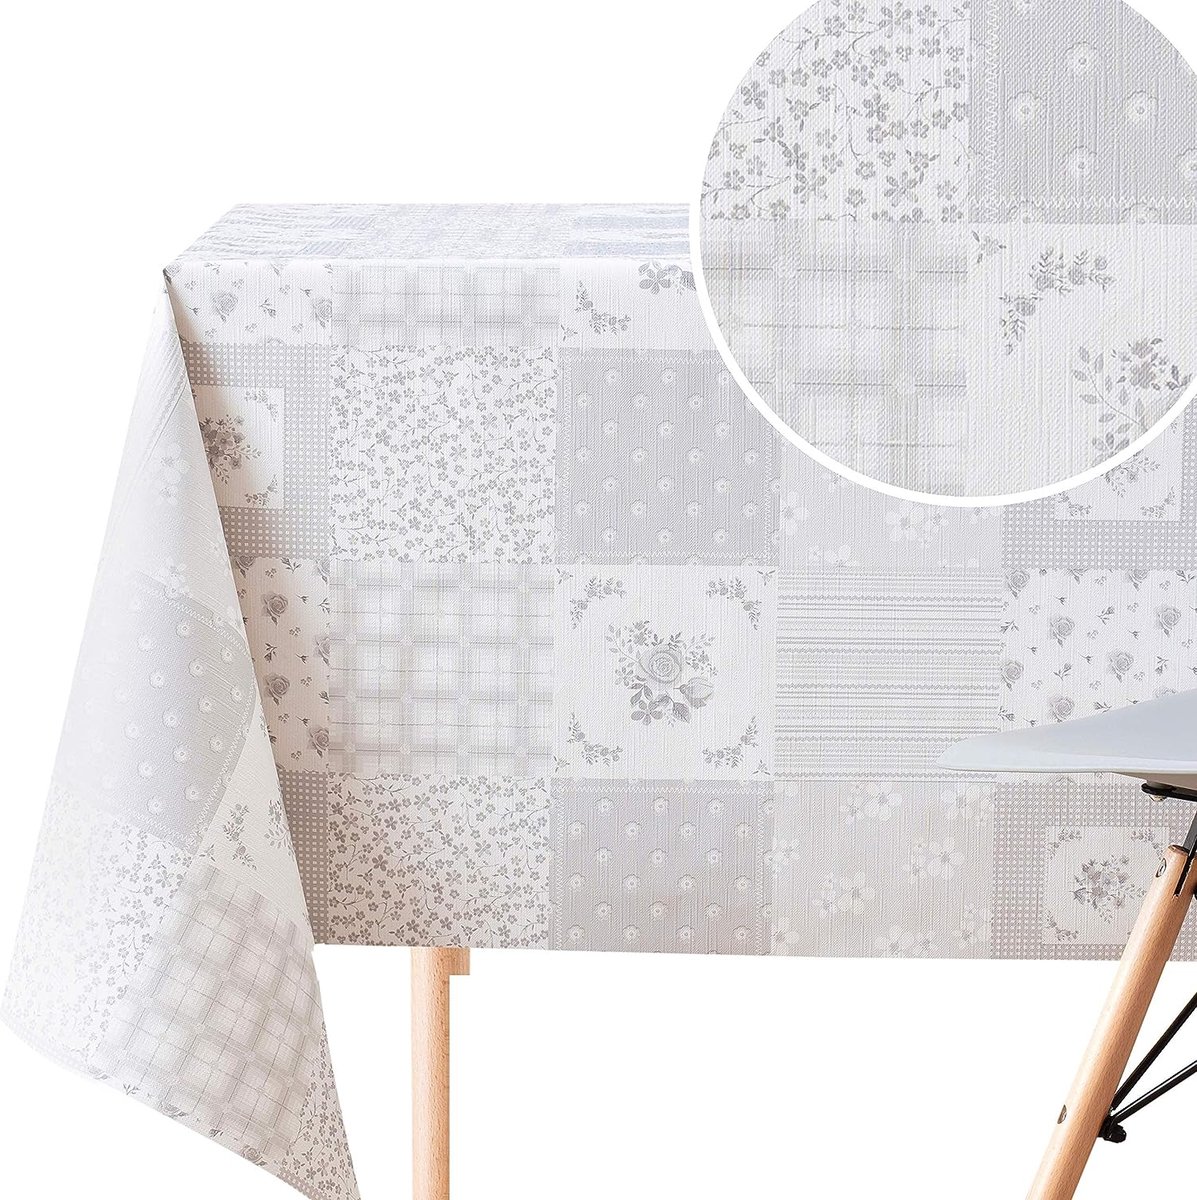 Veeg schoon grijs tafelkleed met bloemenpatchworkpatroonquilt | 200 x 140 cm rechthoekige tafels voor 6 personen, robuust waterdicht tafelzeil PVC tafelkleed lichtgrijs tafelzeil tafelkleed